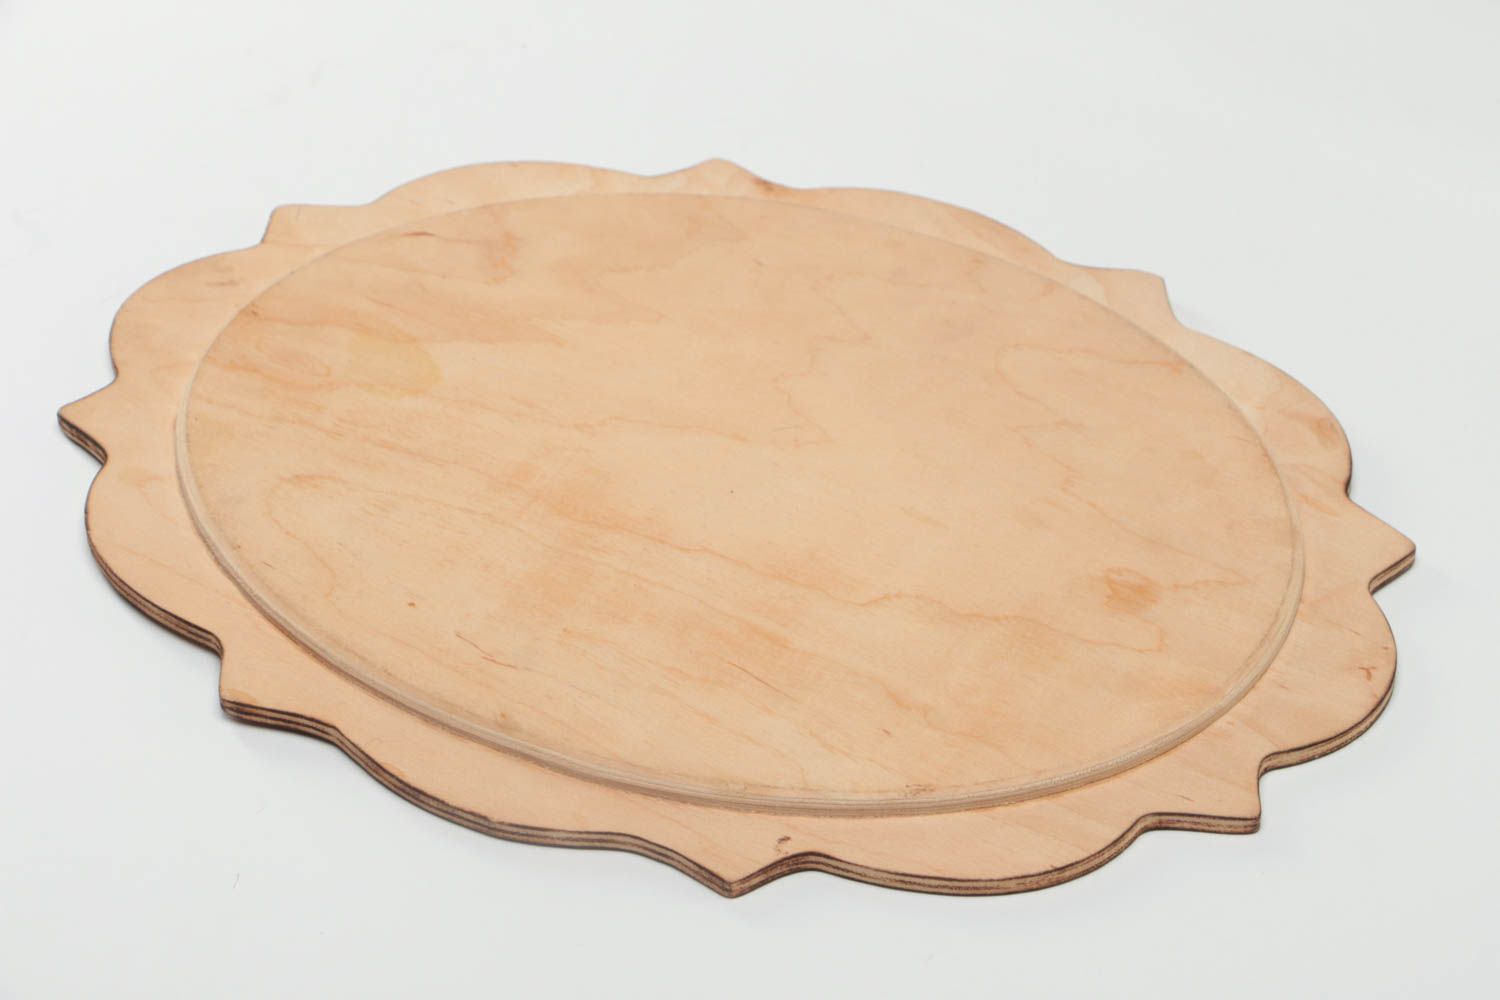 Handmade Geschirr aus Holz Geschenk Idee Holzteller rund Haus Dekor mit Bemalung foto 4